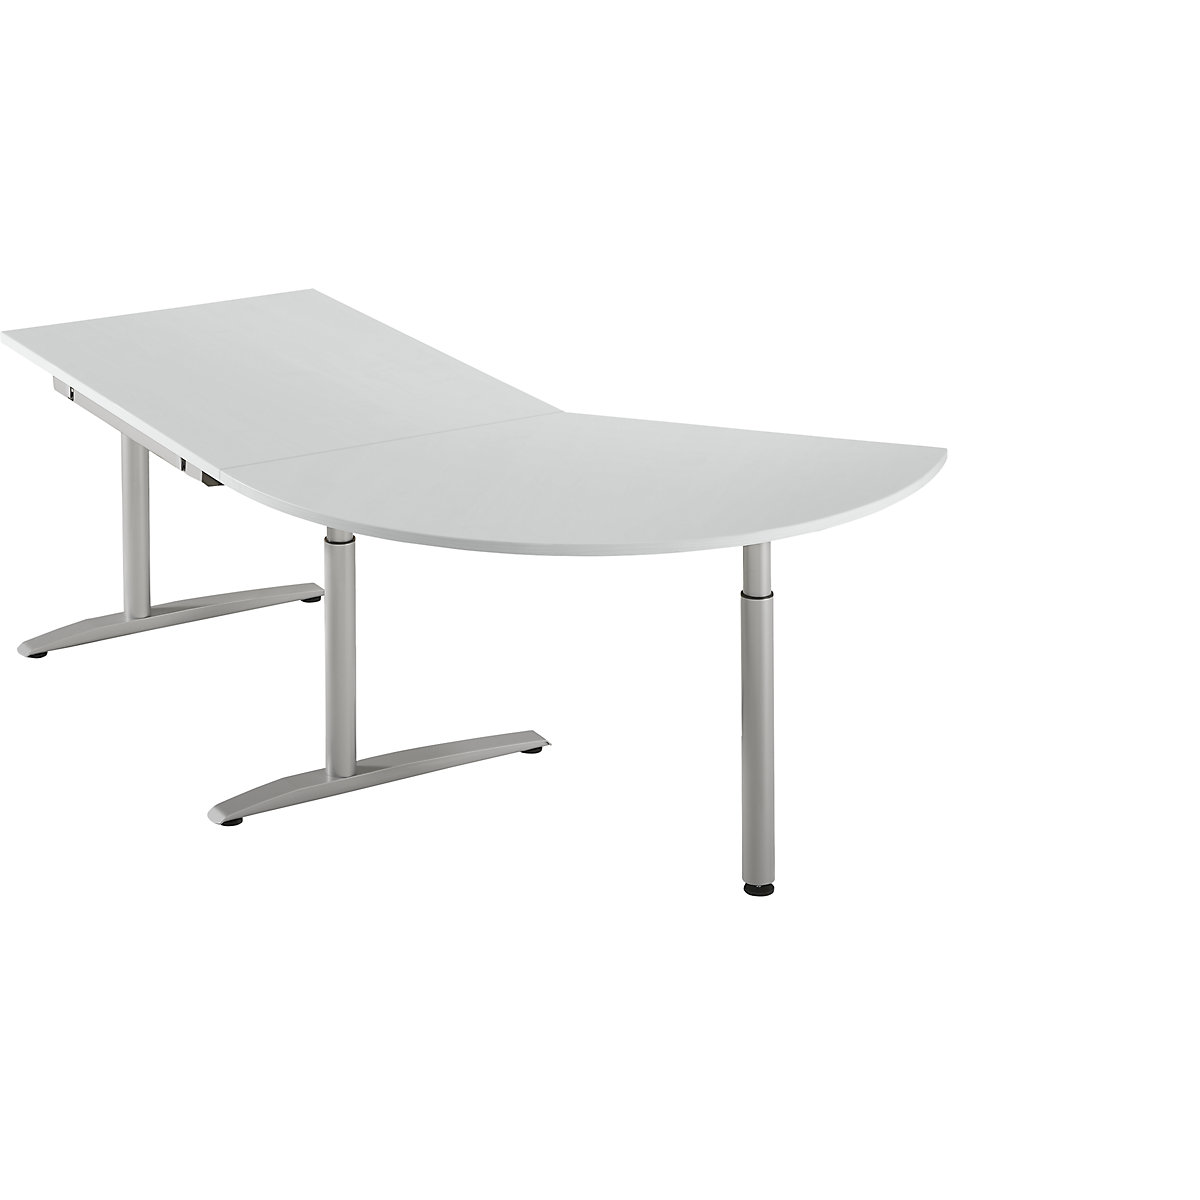 HANNA Table d'extension réglable en hauteur de 650 à 850 mm, 3/8 de cercle, avec pied stabilisateur, gris clair